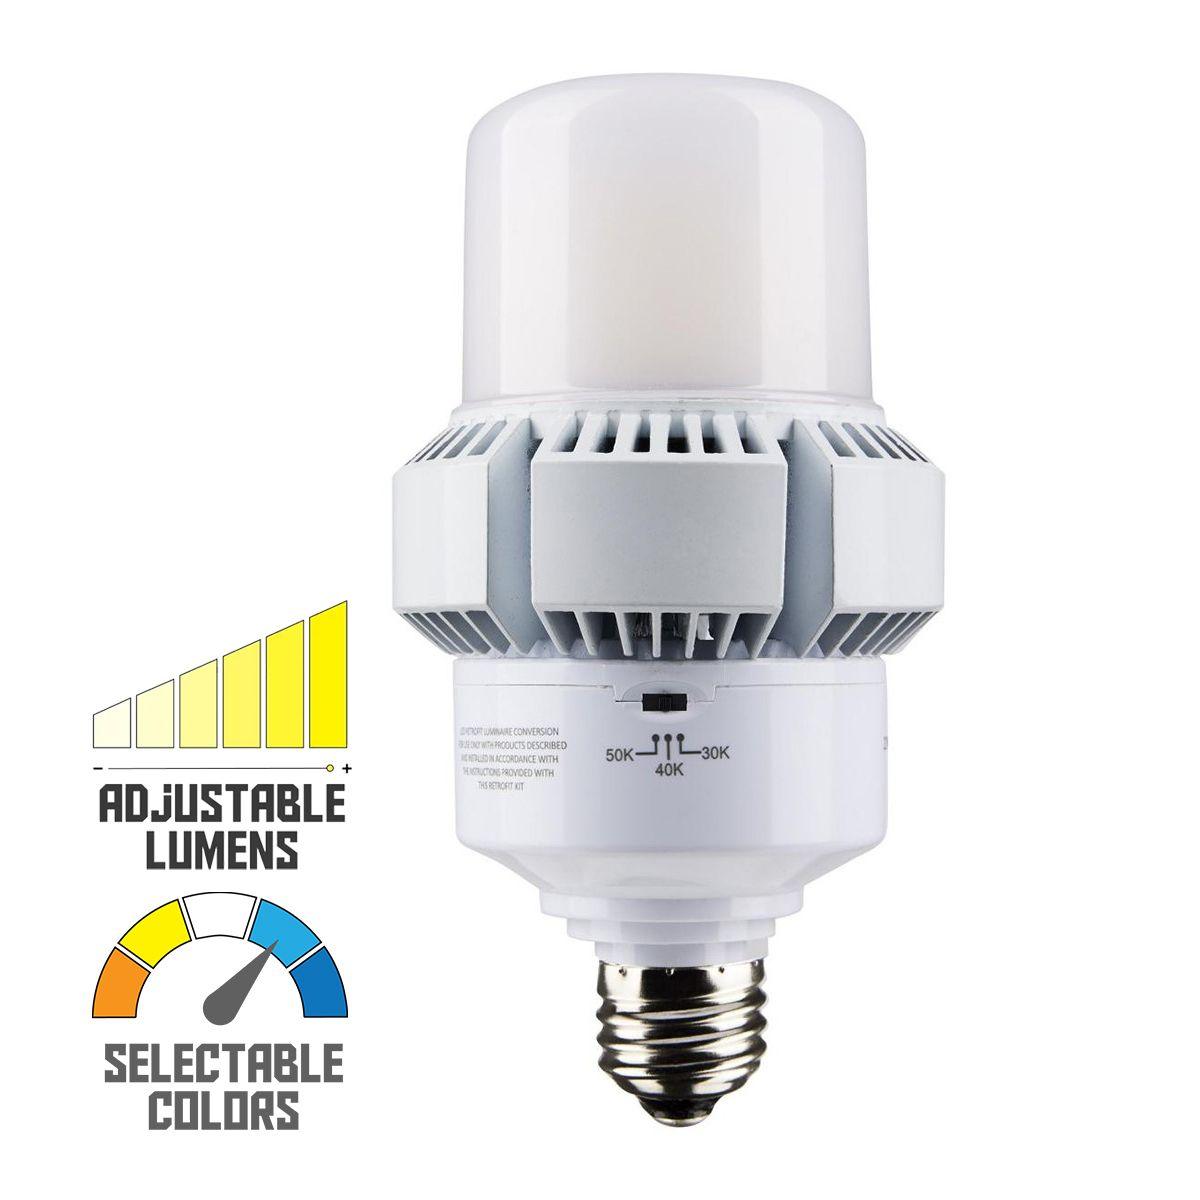 Retrofit LED Corn Bulb, 45W, 5850 Lumens, Selectable CCT, 30K/40K/50K, E26 Base, 120-277V - Bees Lighting